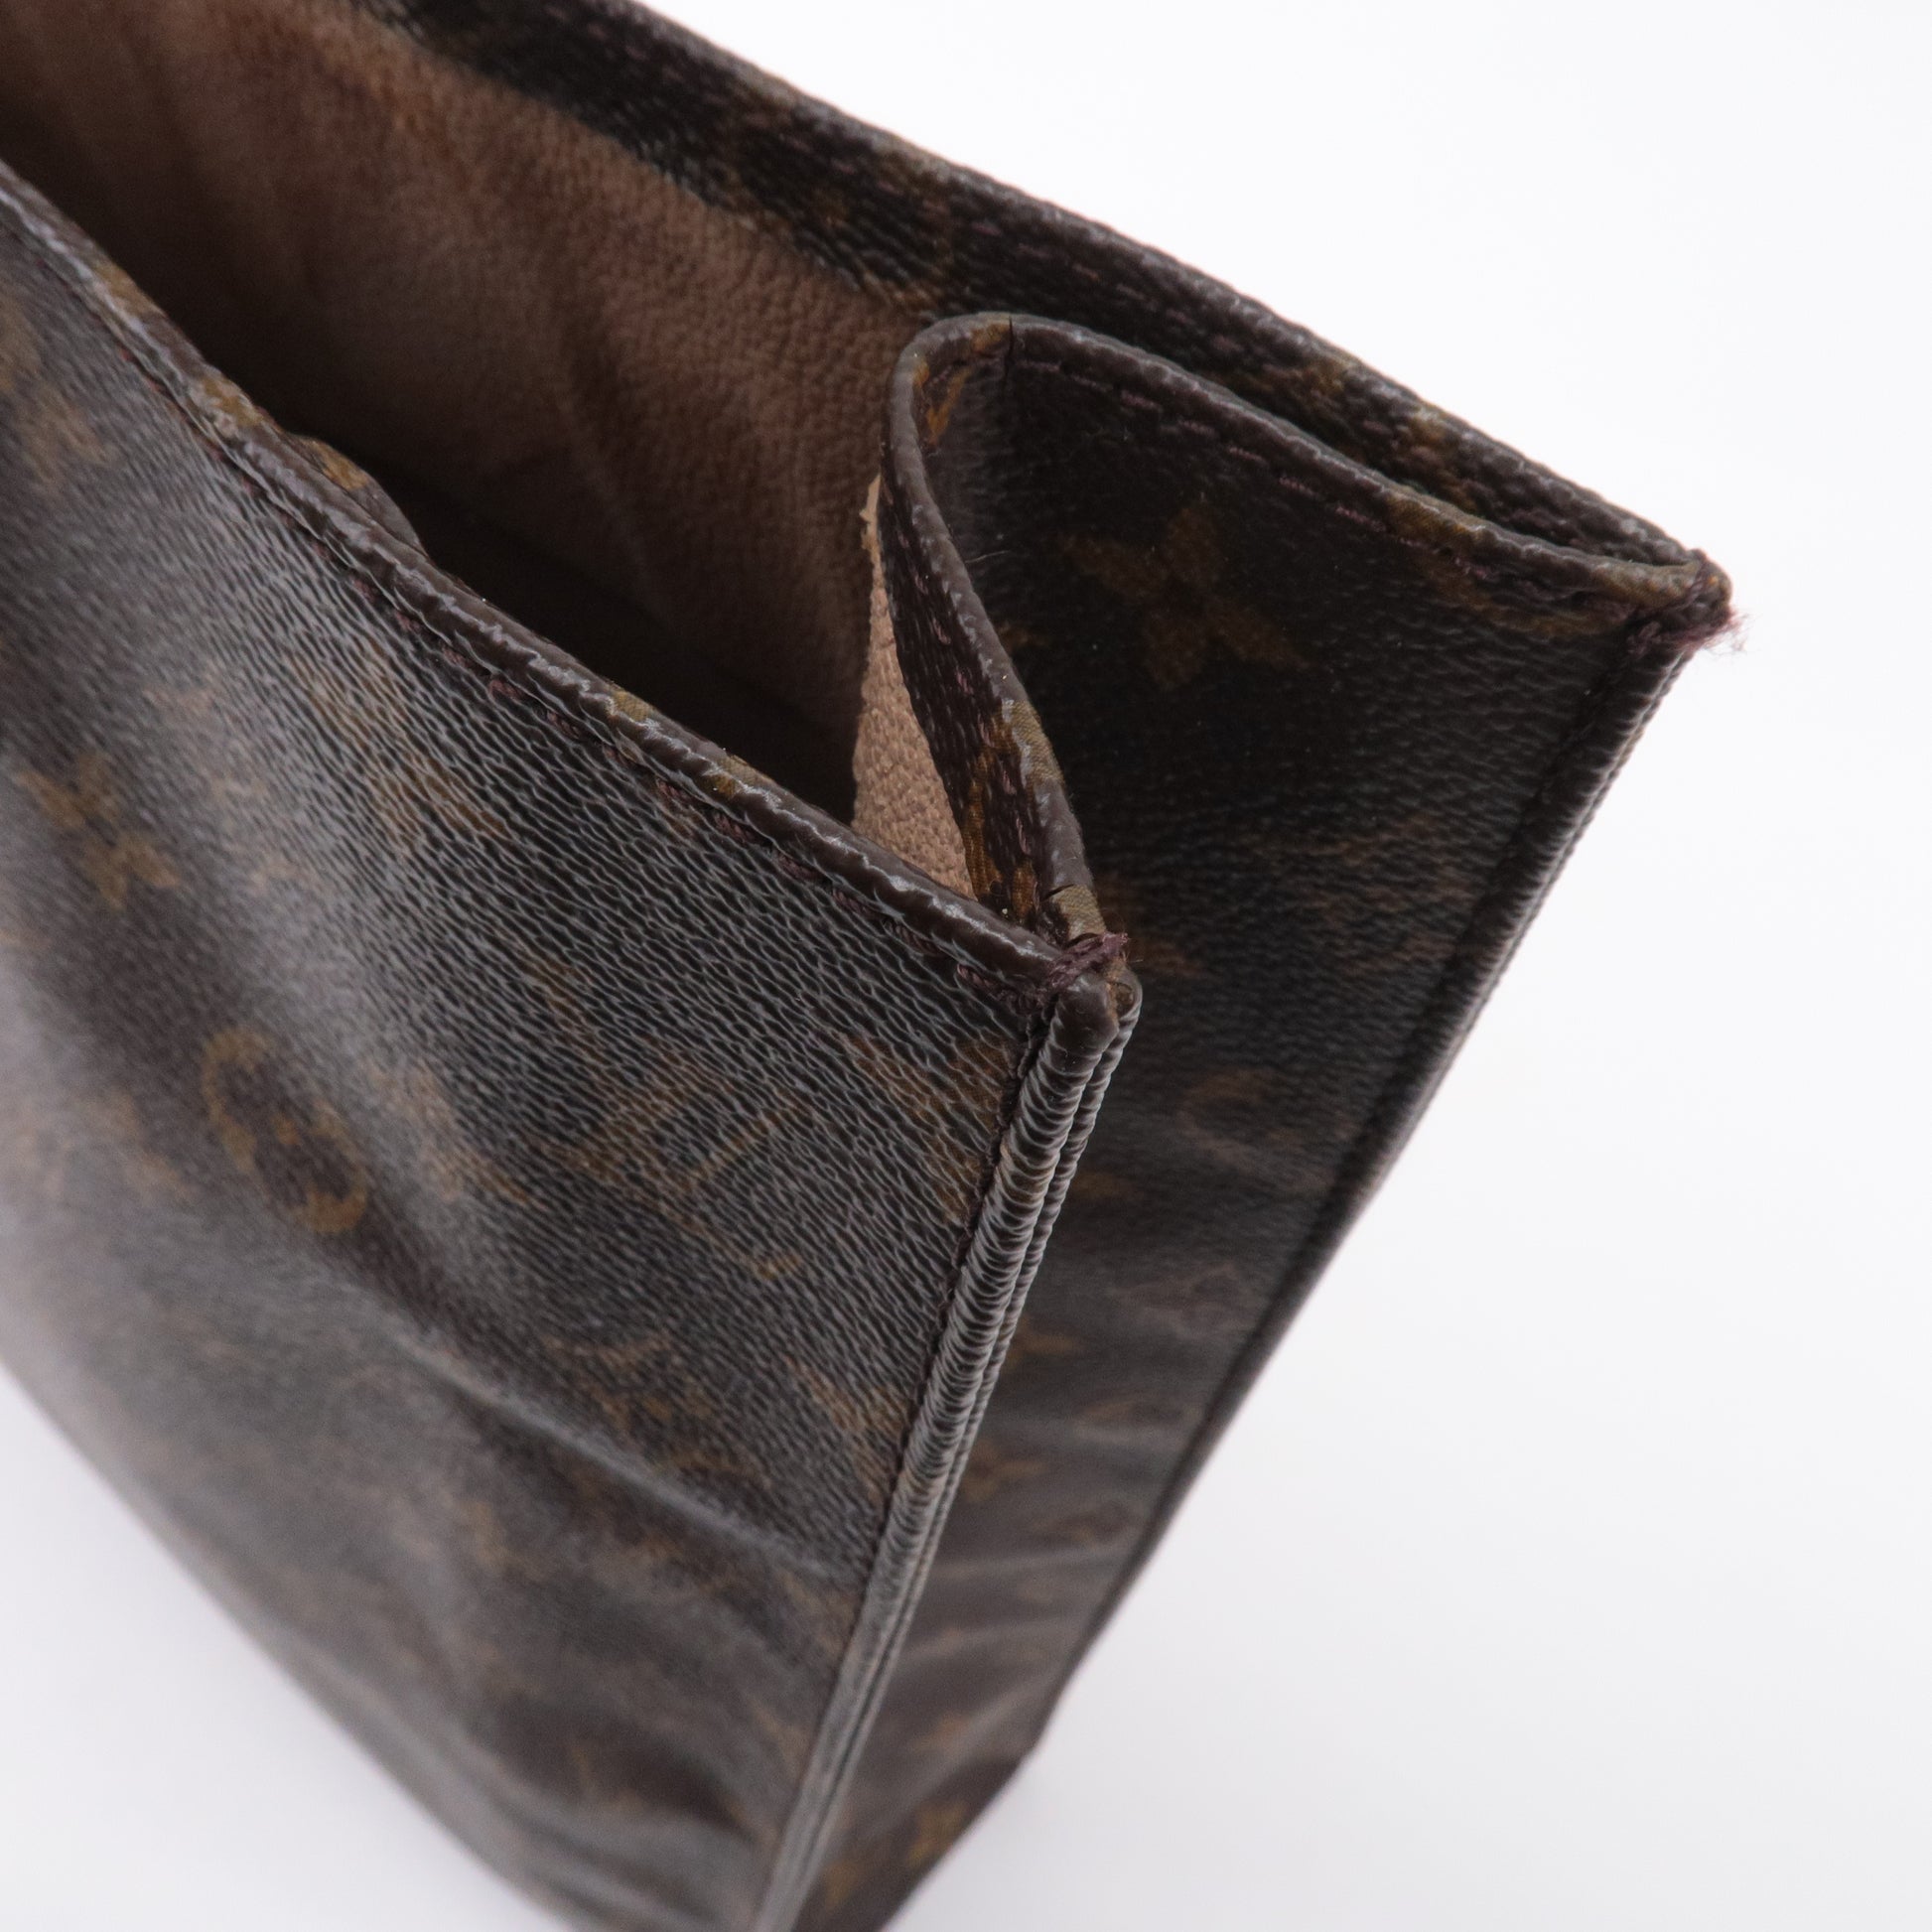 Louis Vuitton Monogram Sac Plat - Brown Totes, Handbags